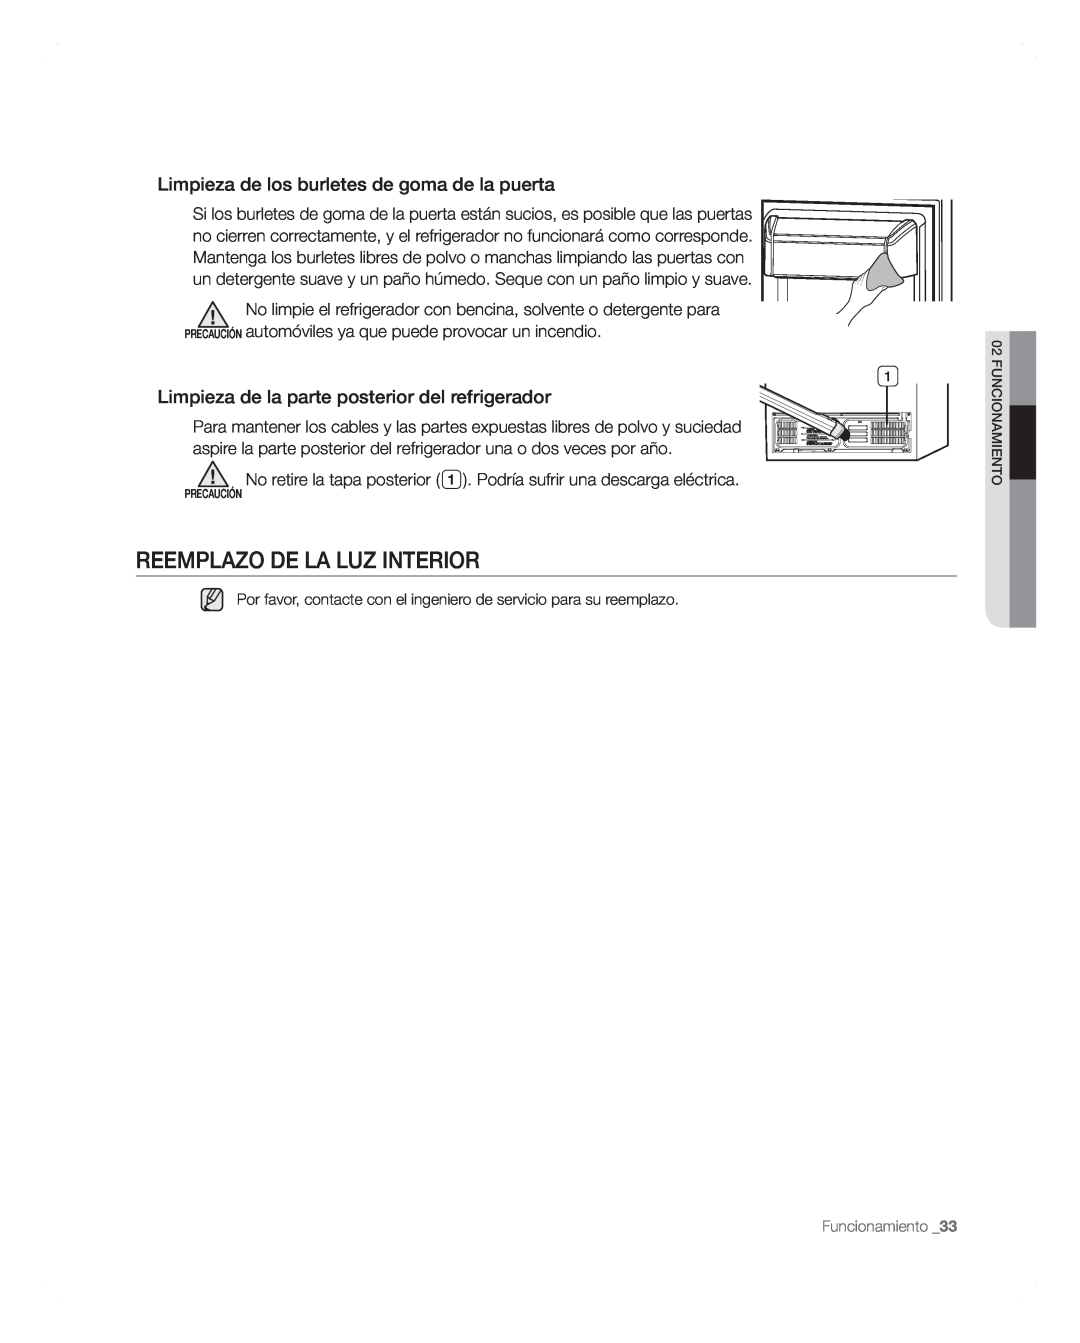 Samsung RFG297AARS user manual Reemplazo De La Luz Interior, Limpieza de los burletes de goma de la puerta 